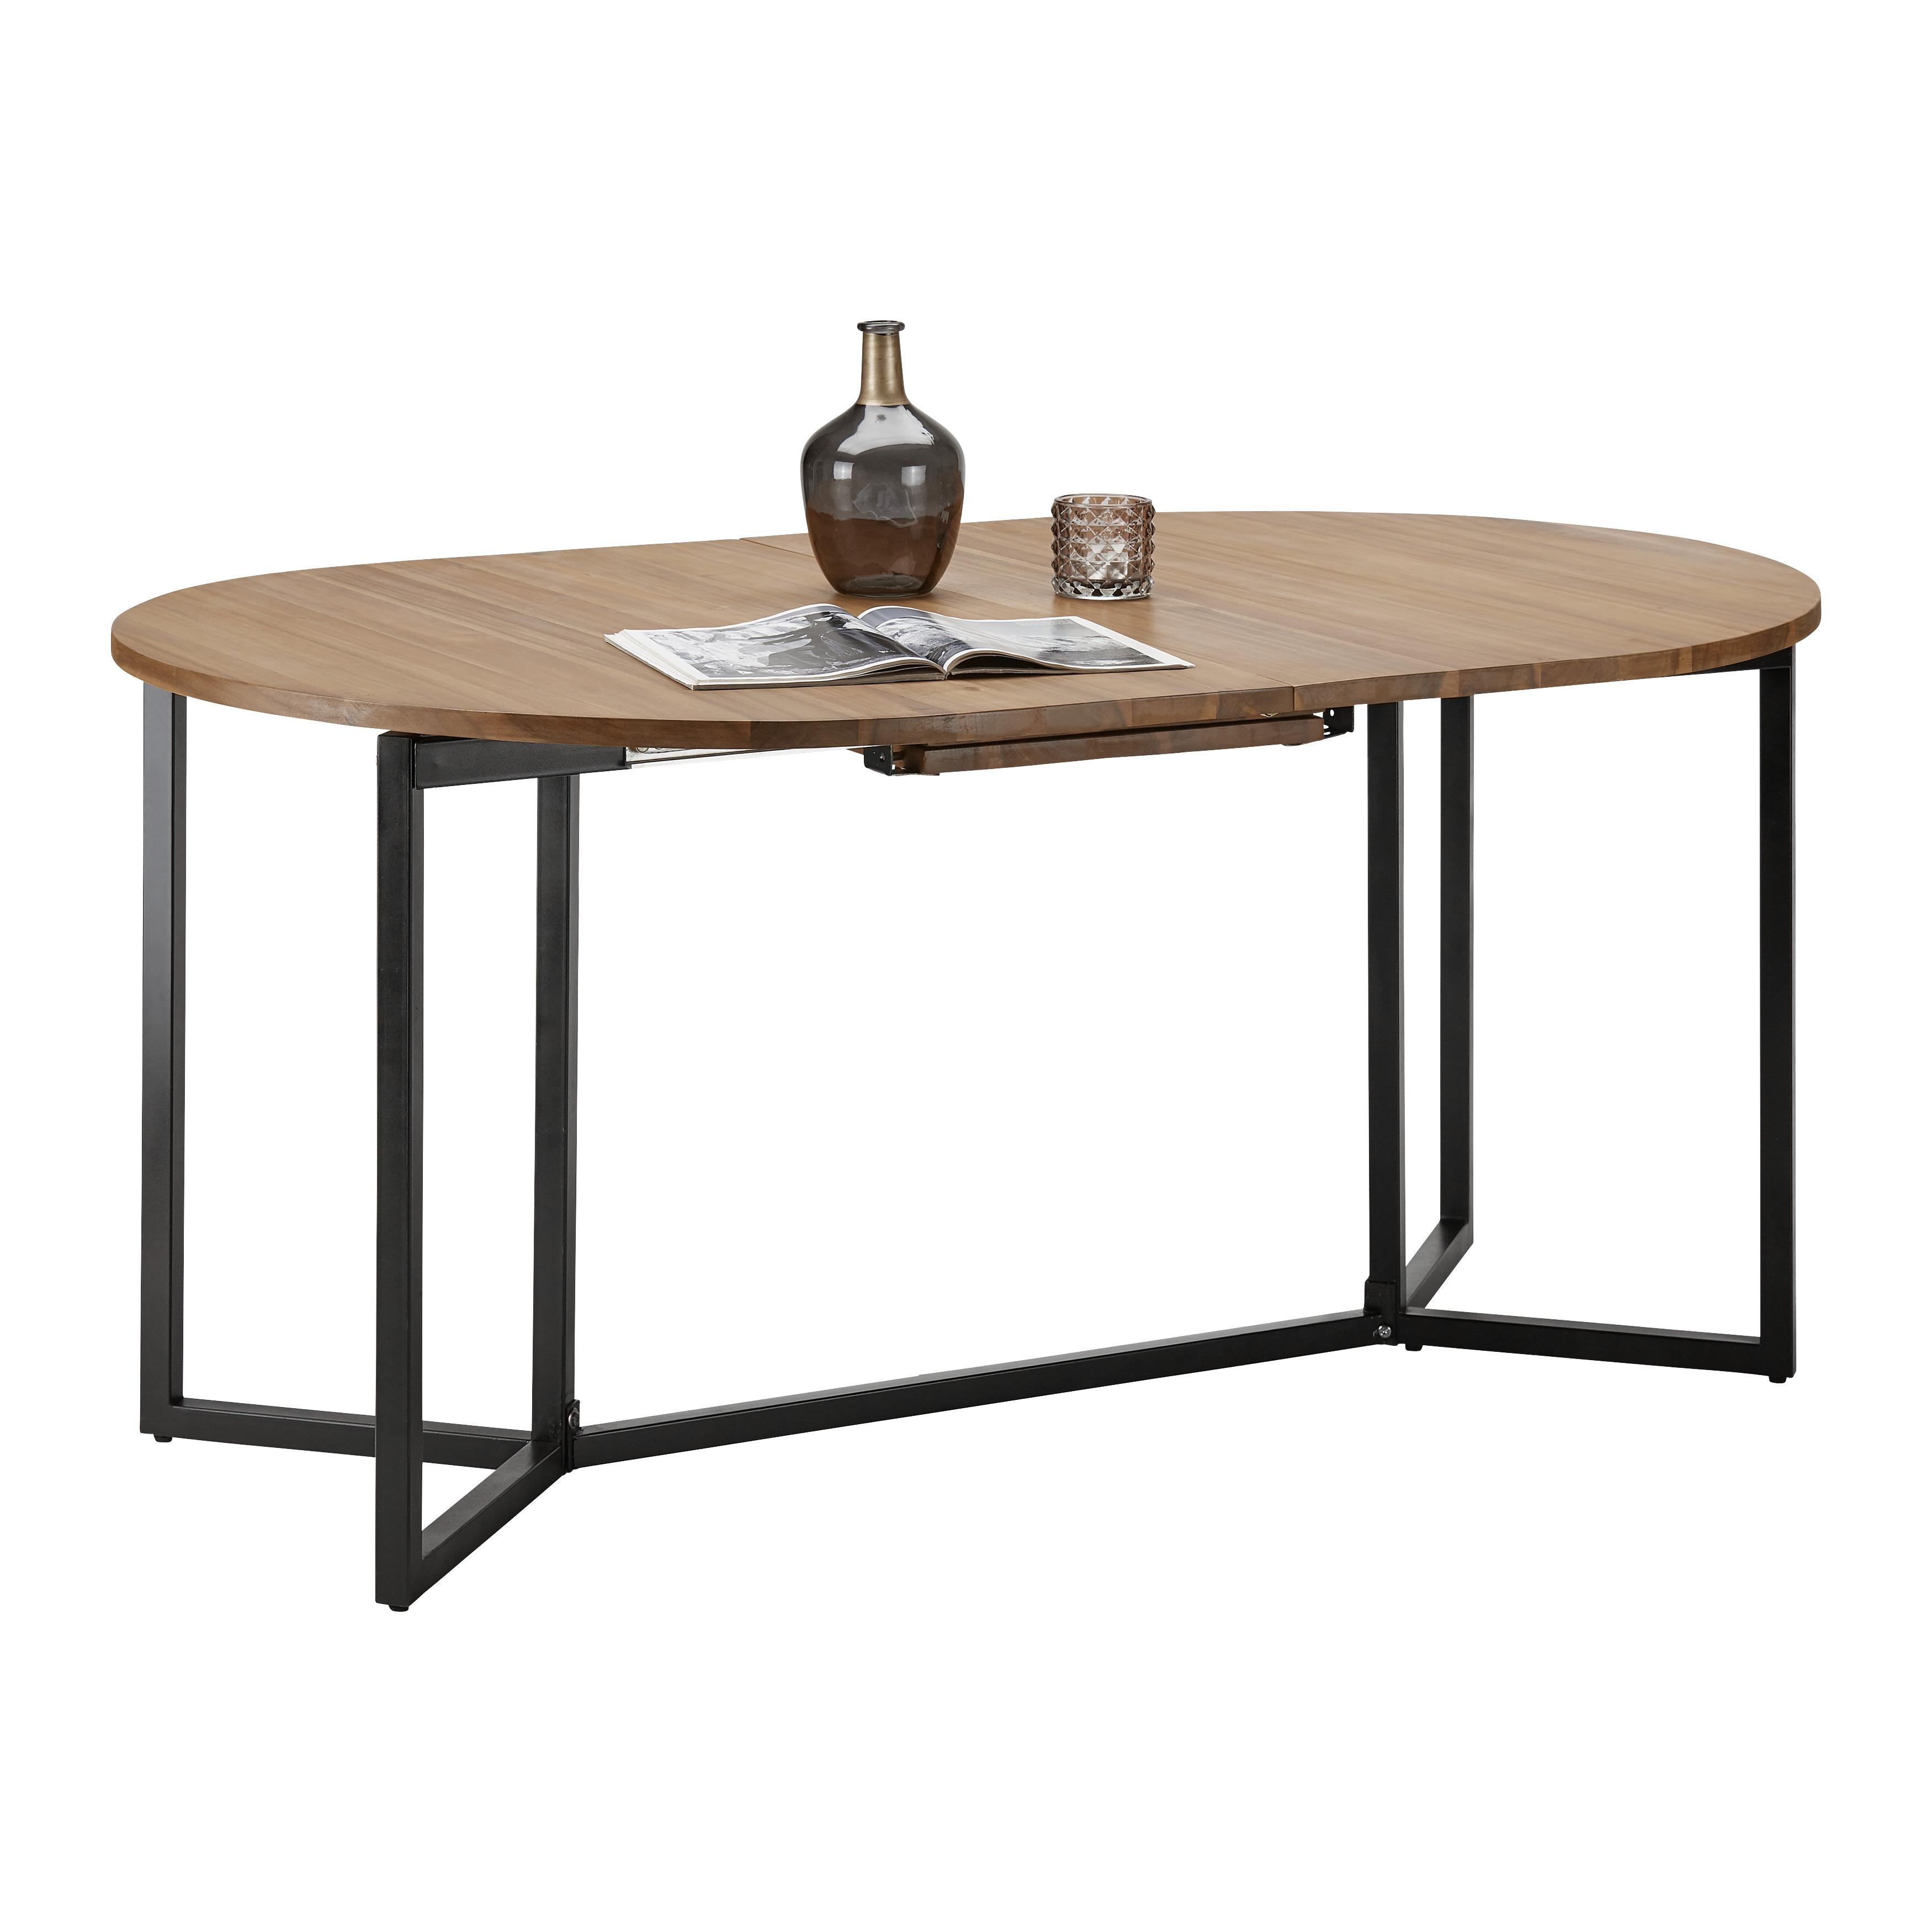 Rozkládací Jídelní Stůl Samuel 160-200x100 Cm - černá/barvy akácie, Moderní, kov/dřevo (160-200/100/75cm) - Bessagi Home